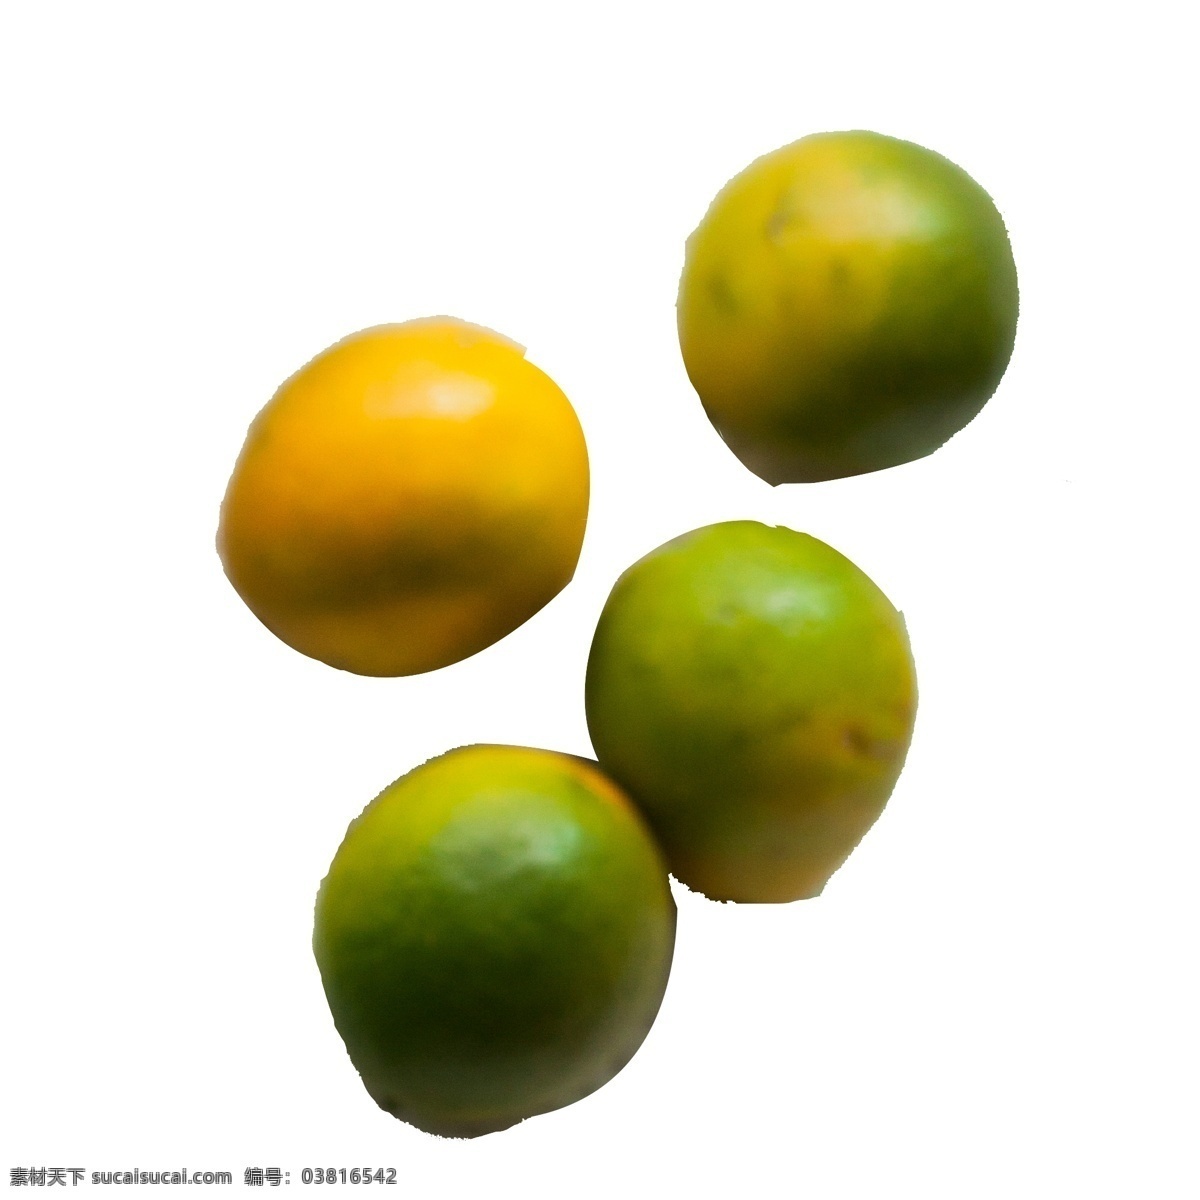 四 绿色 桔子 免 抠 图 两个桔子 新鲜的桔子 绿色水果 植物果实 新鲜的果实 黄色的枝桔子 免抠图